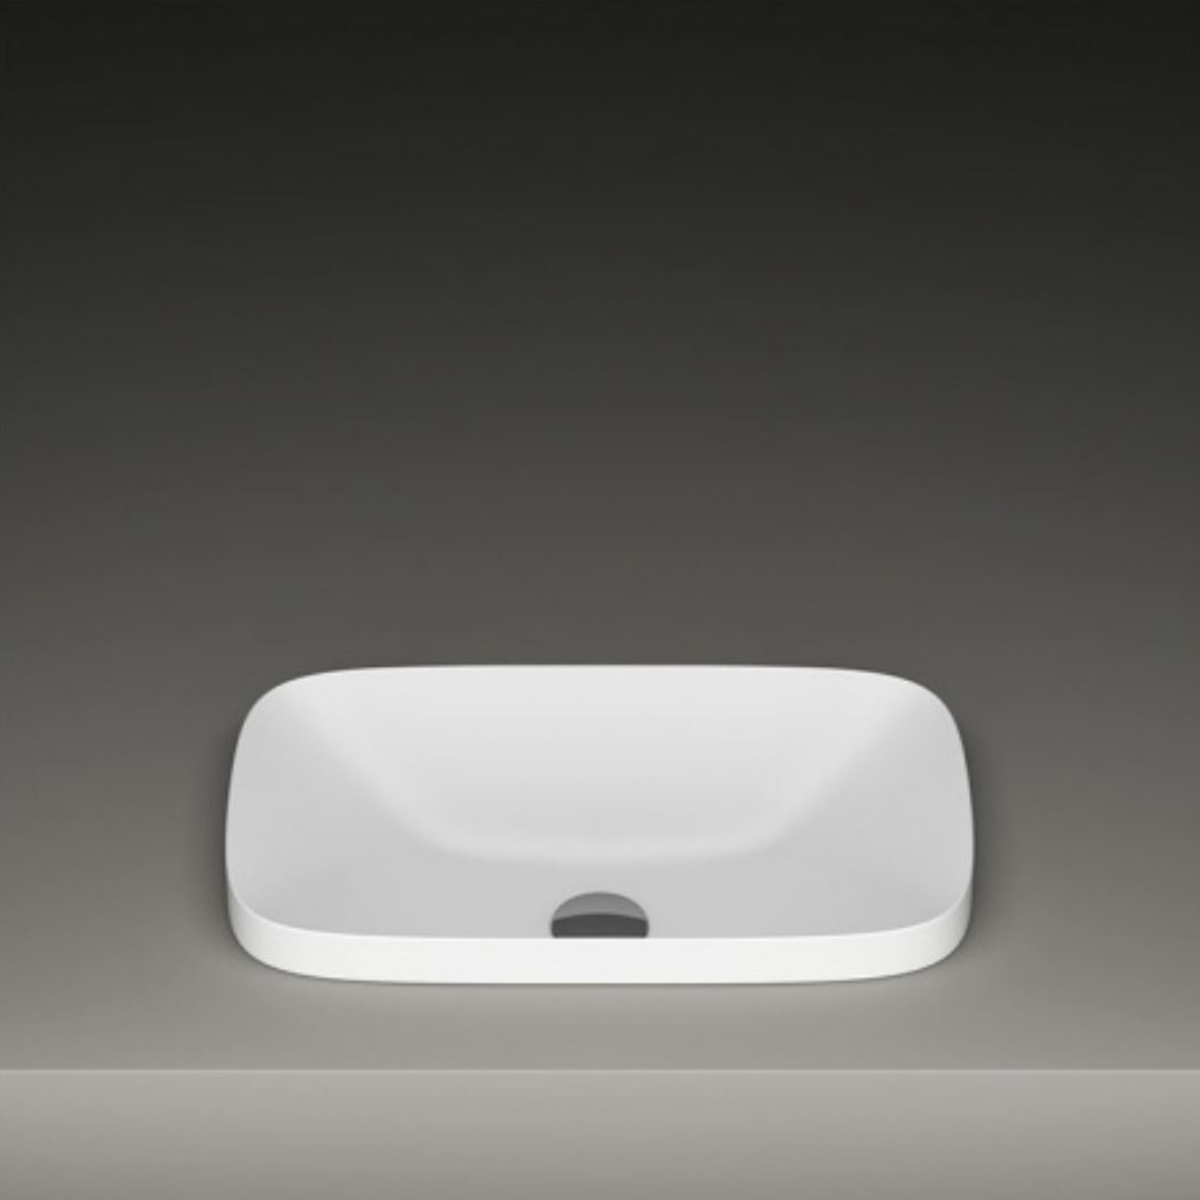 Håndvask til - Nyt smukt design fra Italien